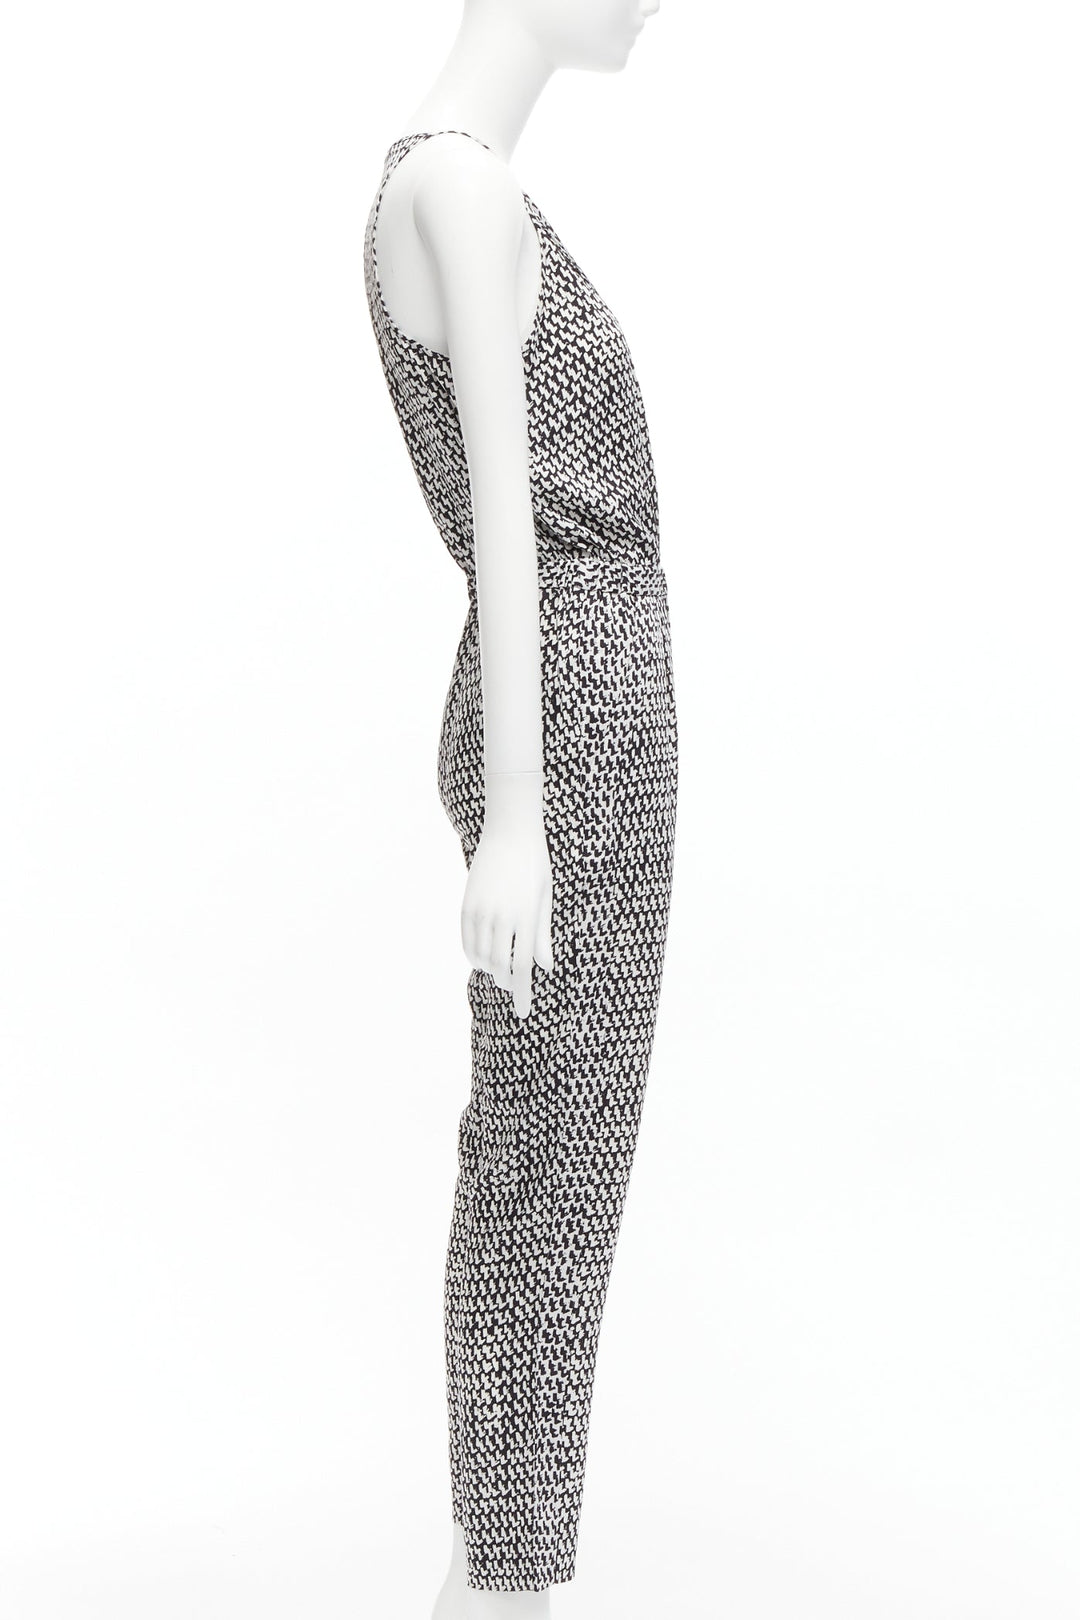 DIANE VON FURSTENBERG black white abstract print silk wrap top jumpsuit US0 XS